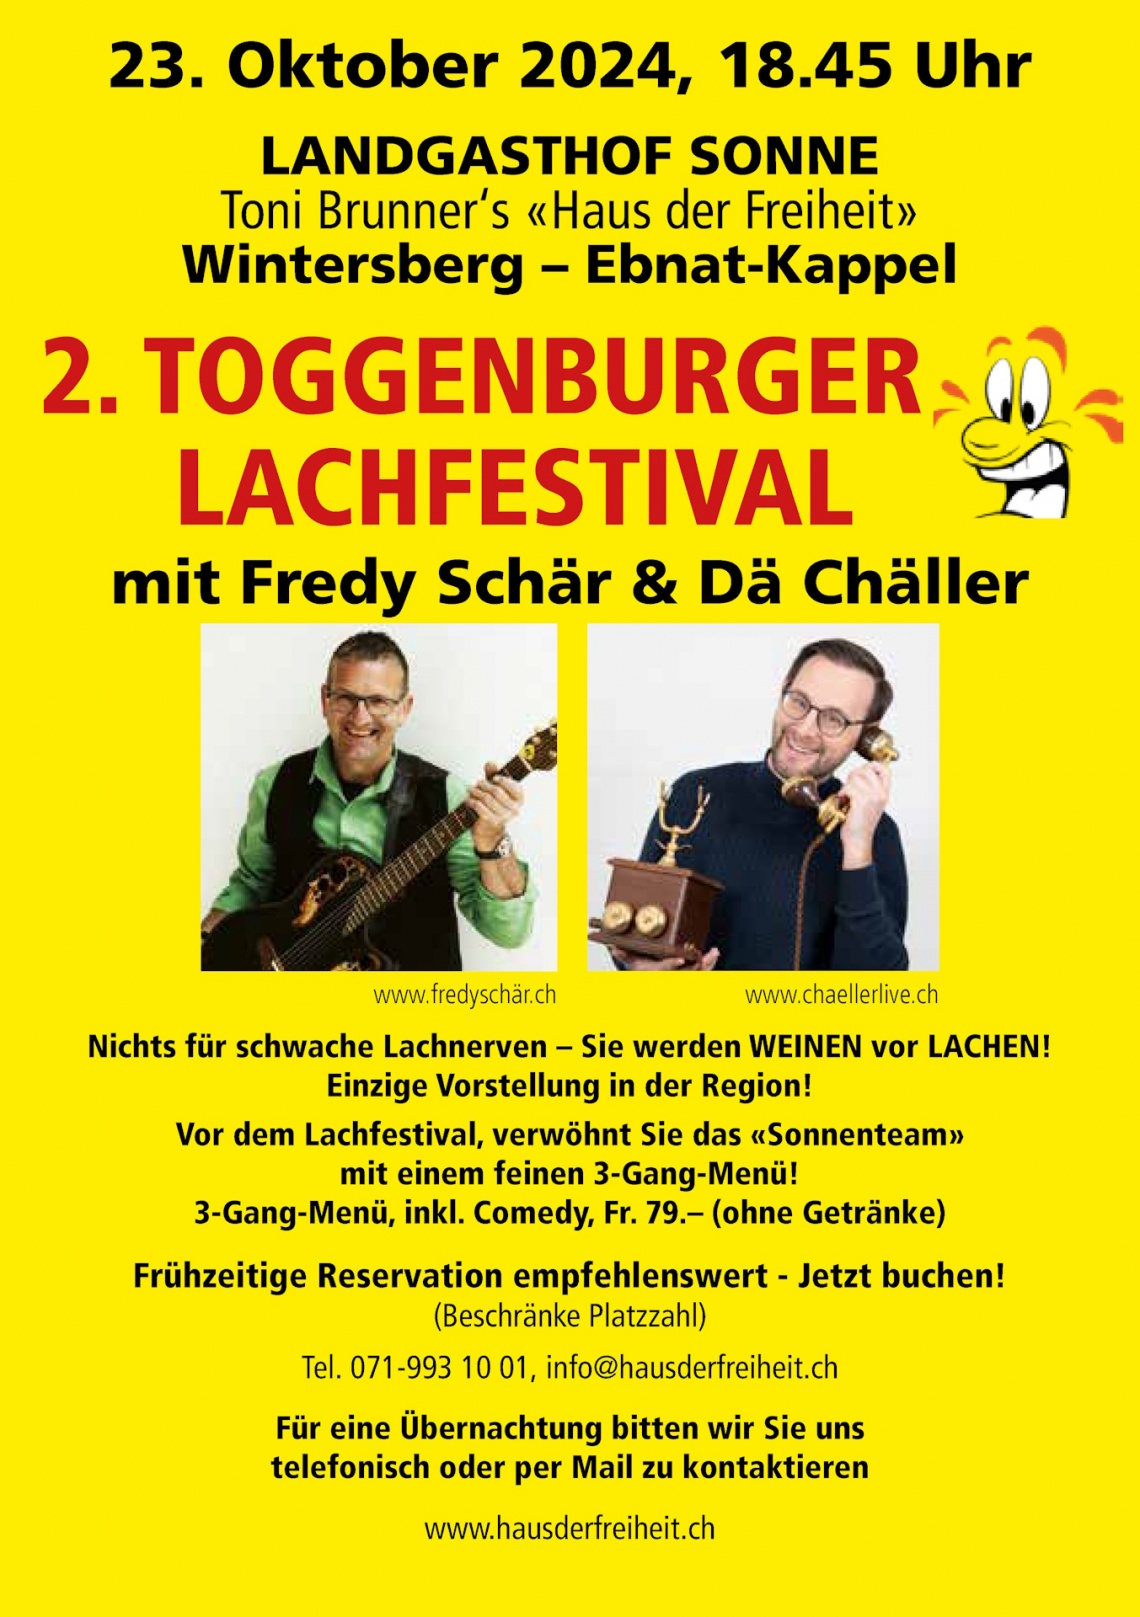 2. Toggenburger Lachfestival mit Fredy Schär und Dä Chäller (Mittwoch, 23.10.2024 um  18.45 Uhr)